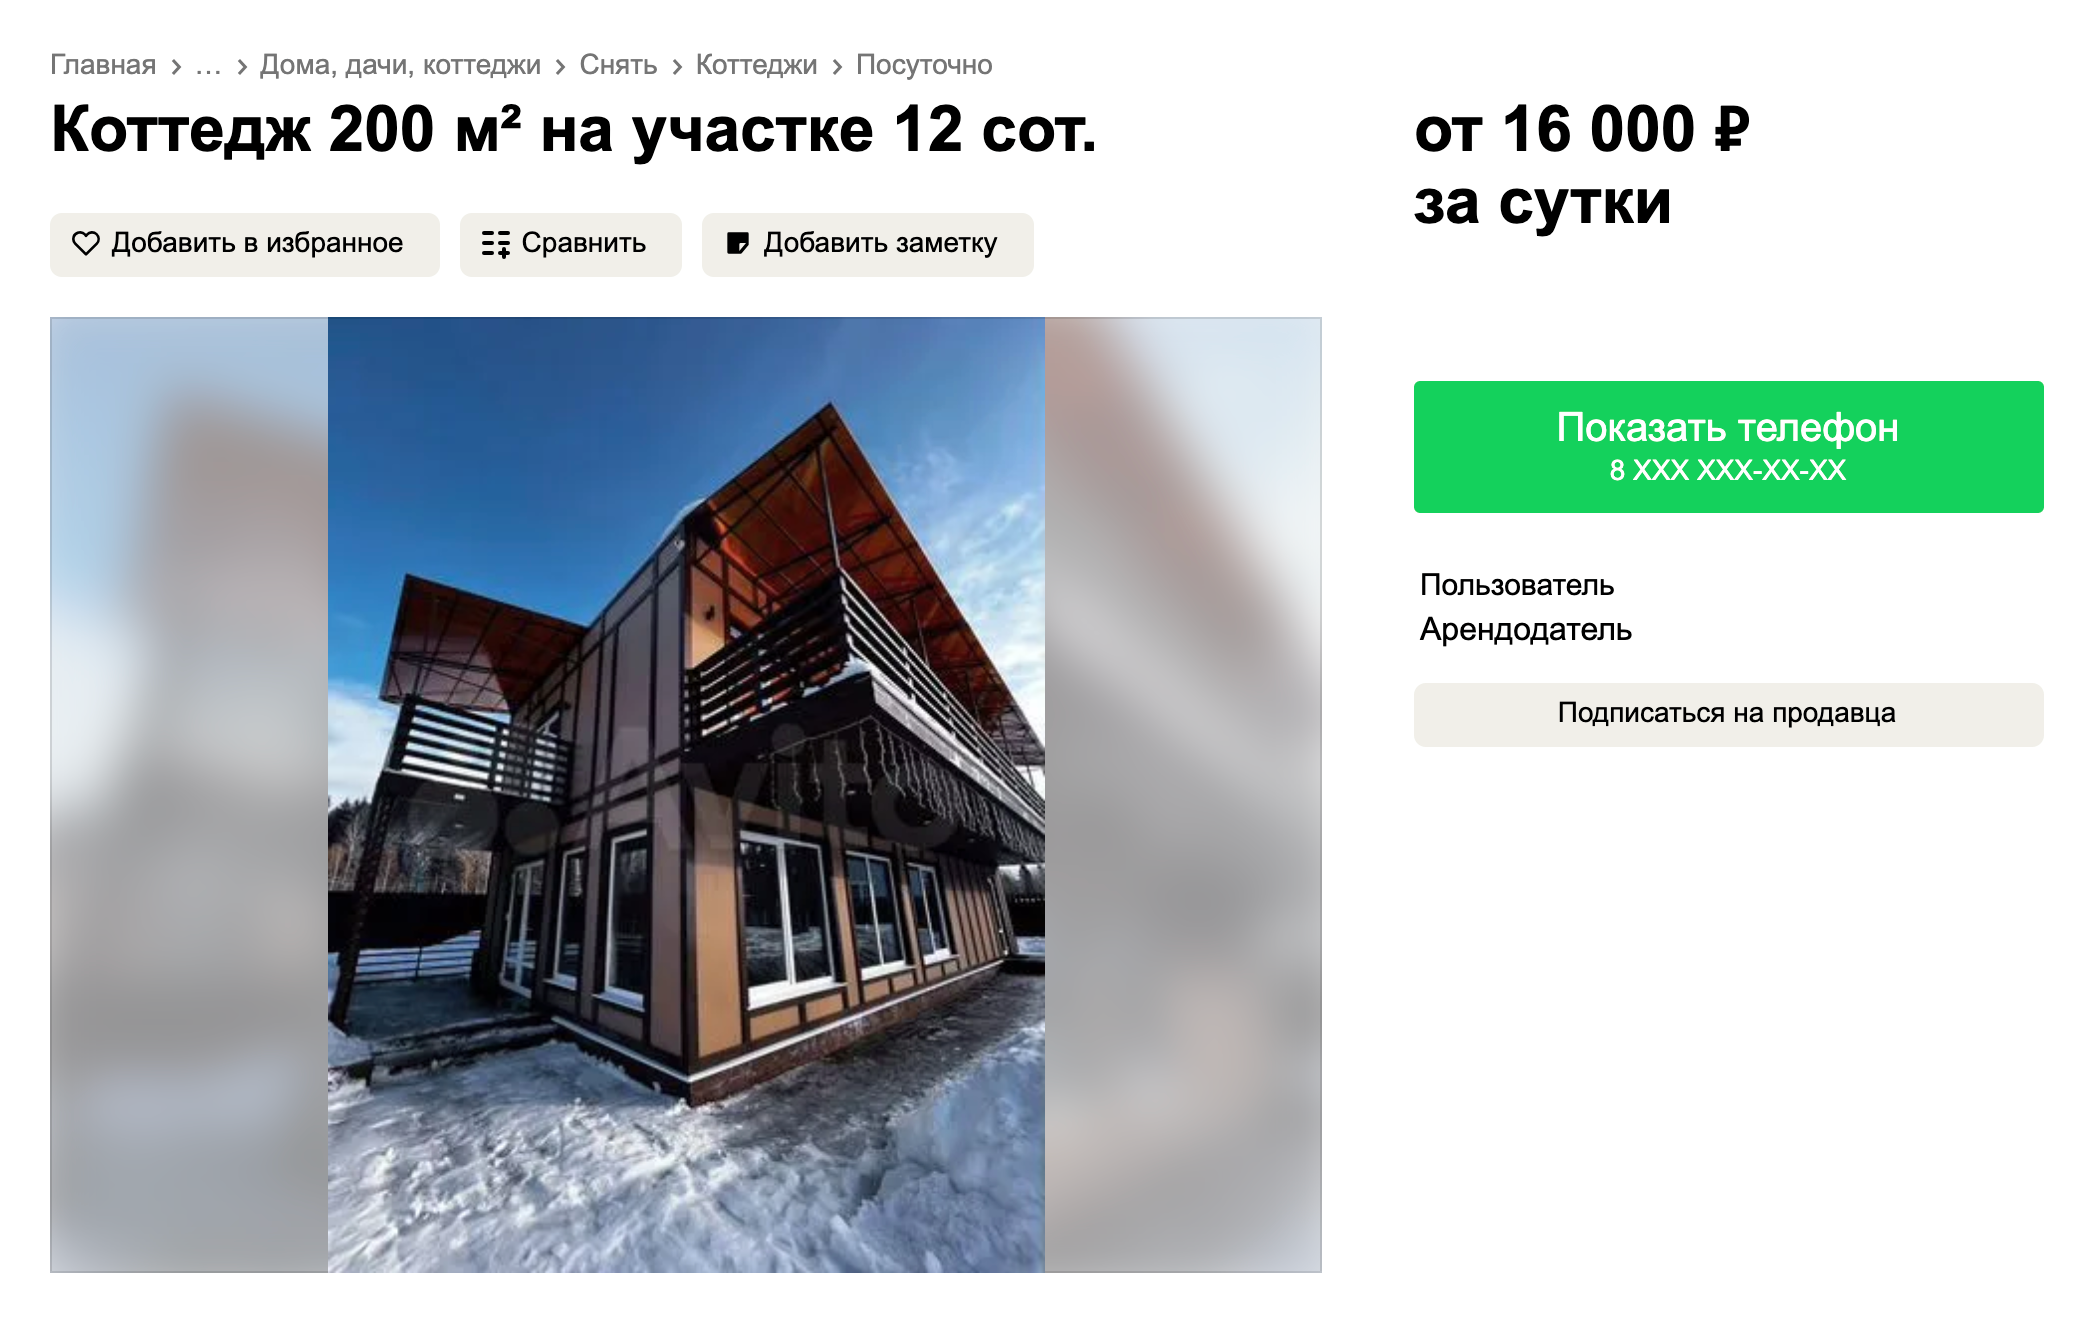 Коттедж на 15 человек в Выборге сдают от 10 000 ₽. Источник: avito.ru